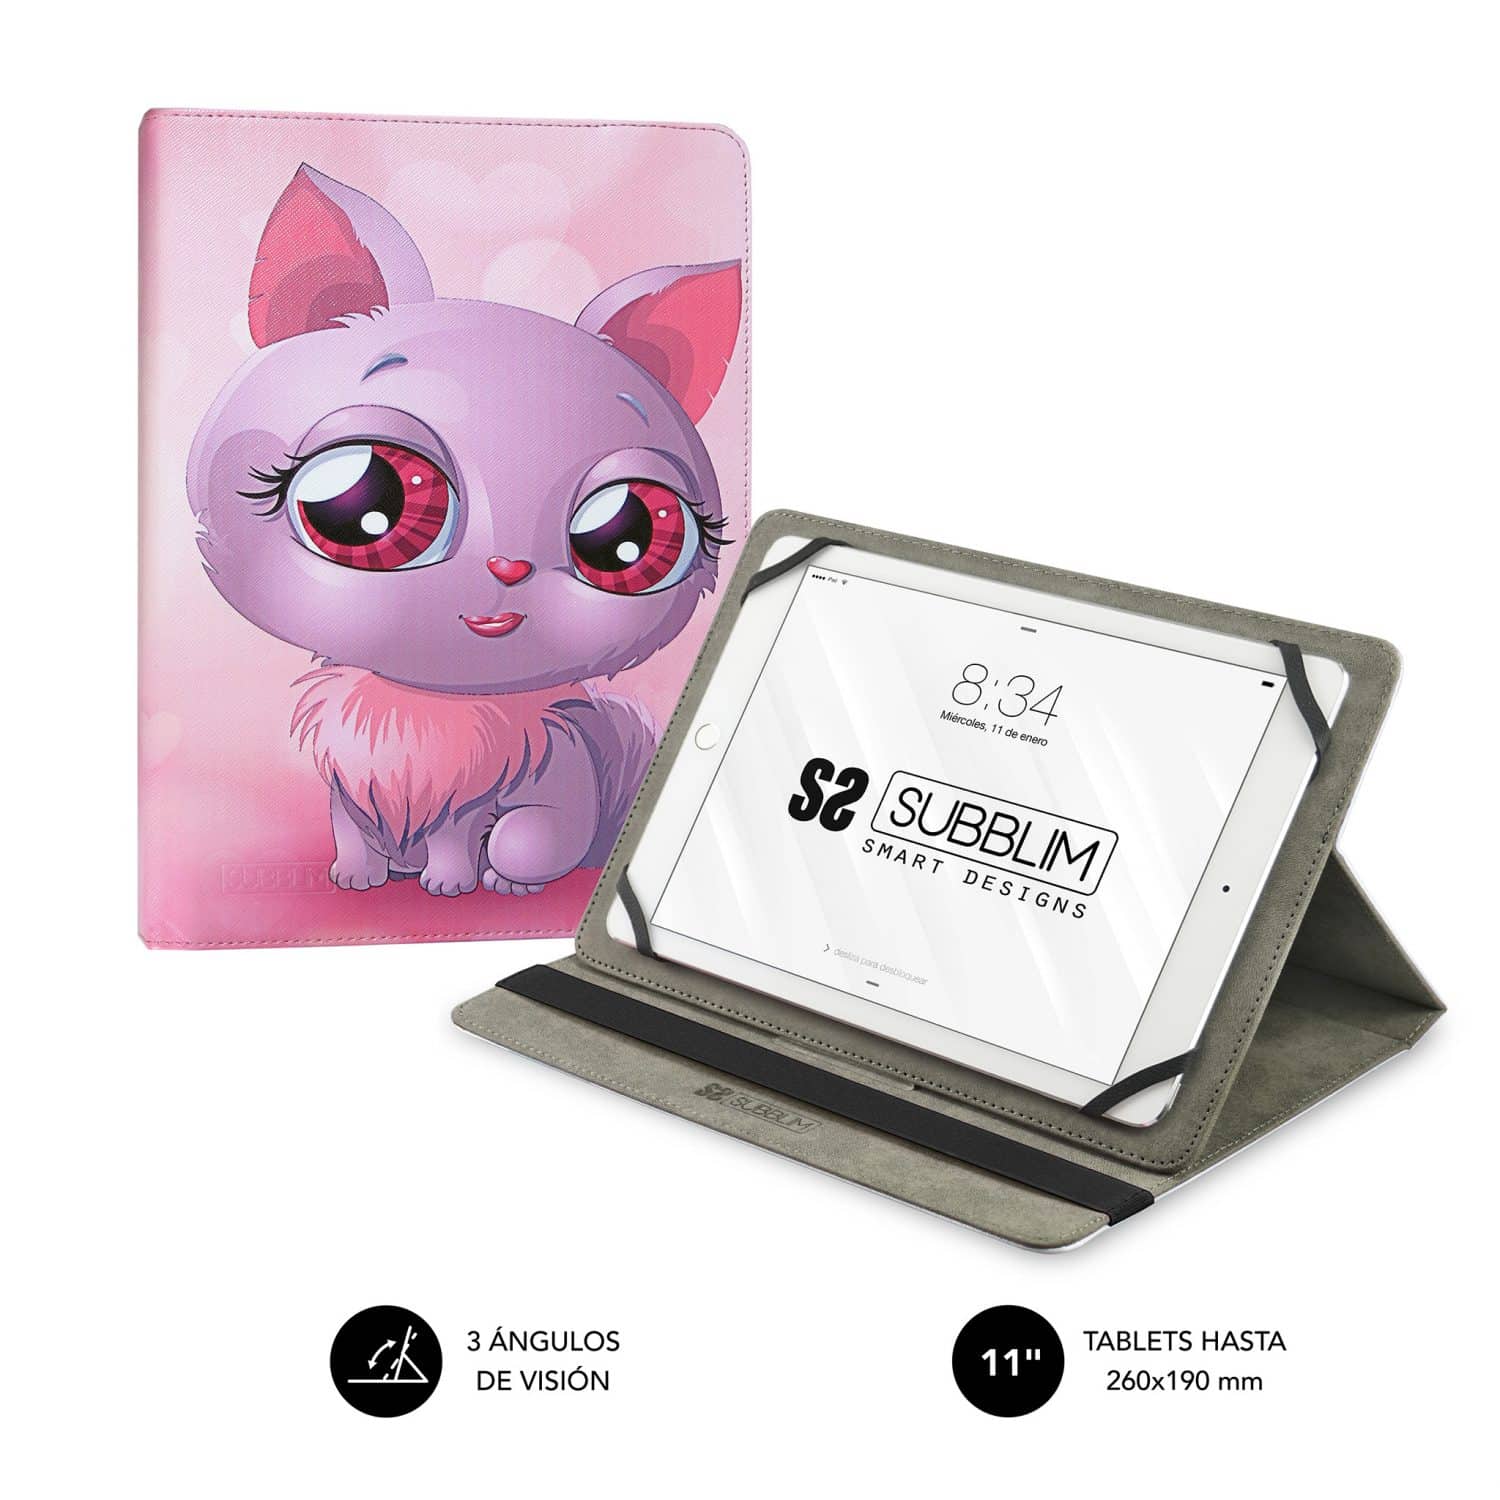 Funda tablet universal diseño trendy gatos. Diseño en colores rosados para darle un aspecto delicado